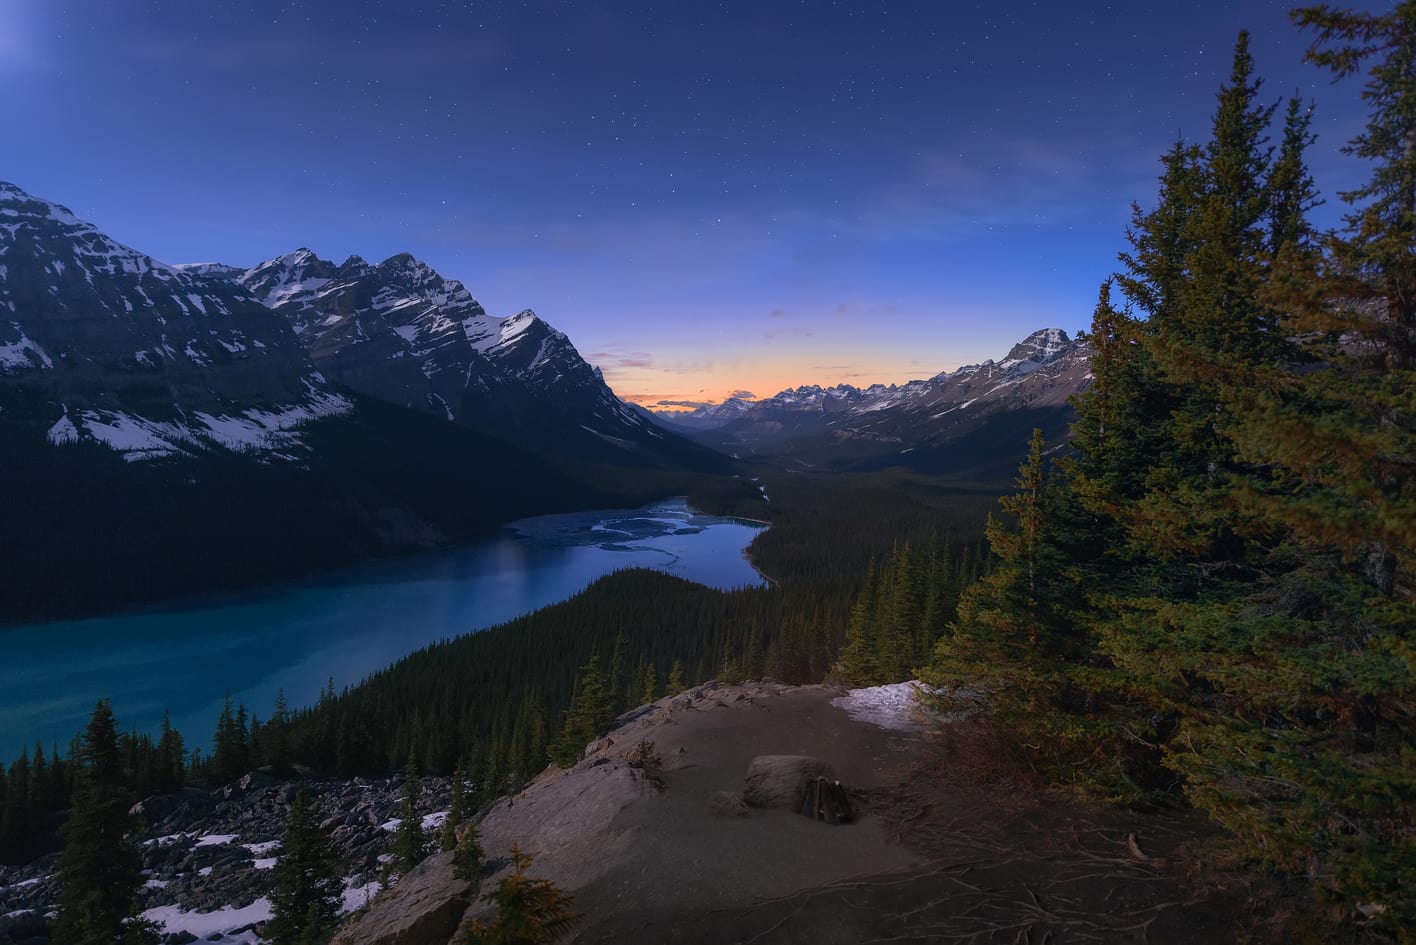 Montañas Rocosas de Canadá, lugares que visitar cerca de Vancouver